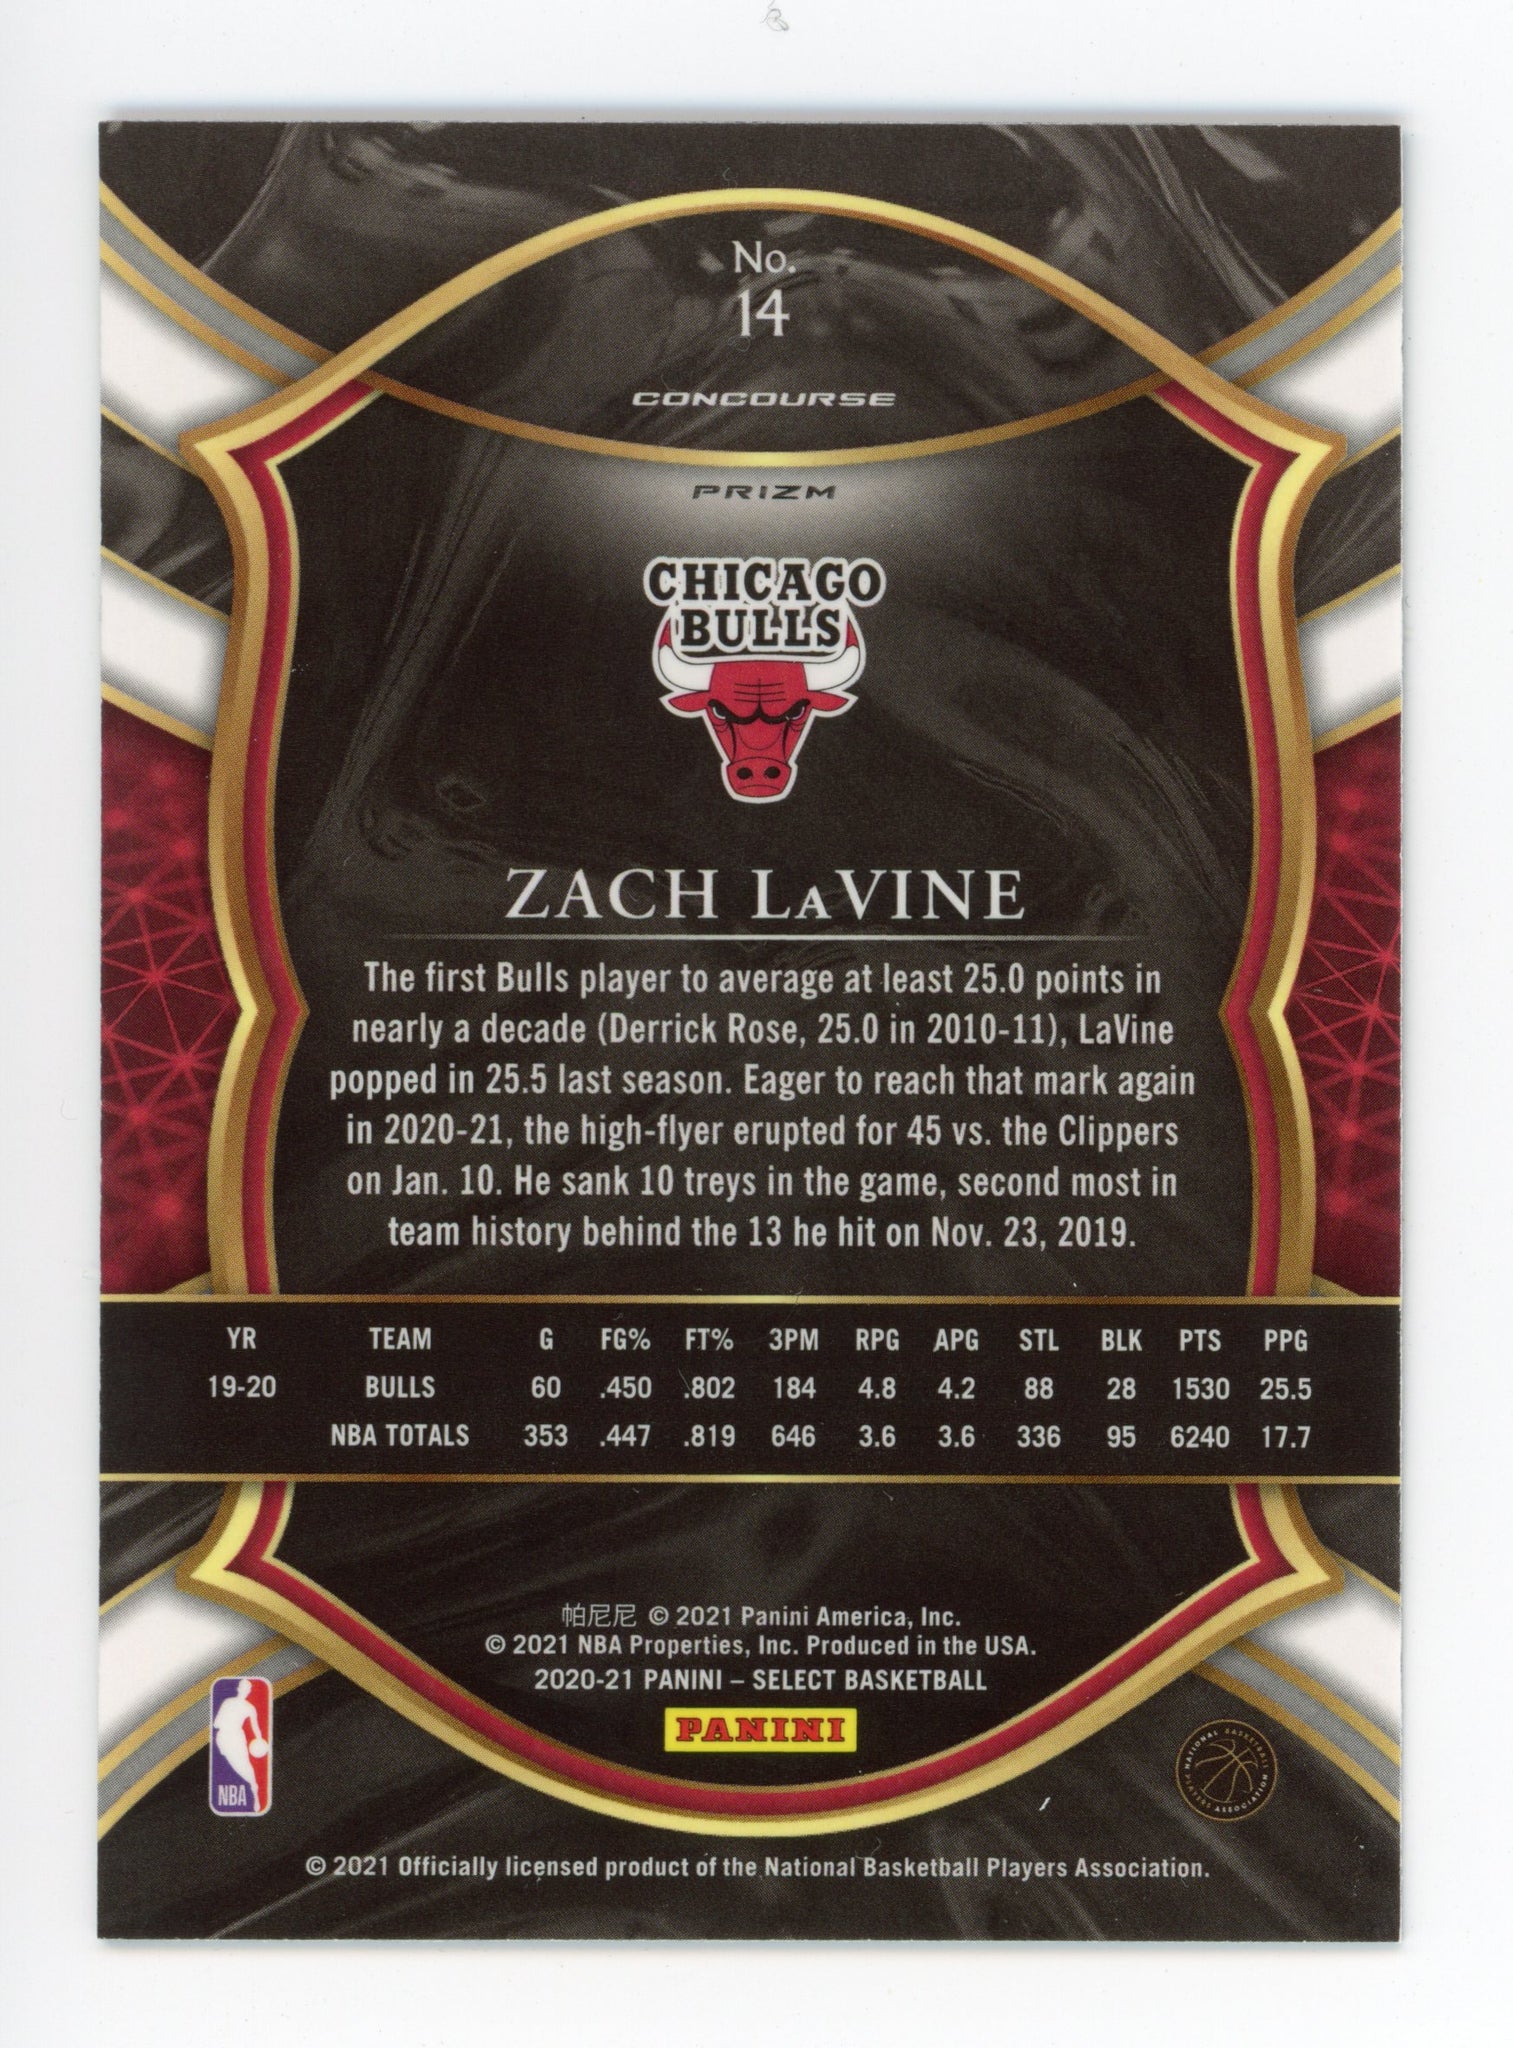 2020-2021 Zach Lavine Concourse Prizm Chicago Bulls # 14